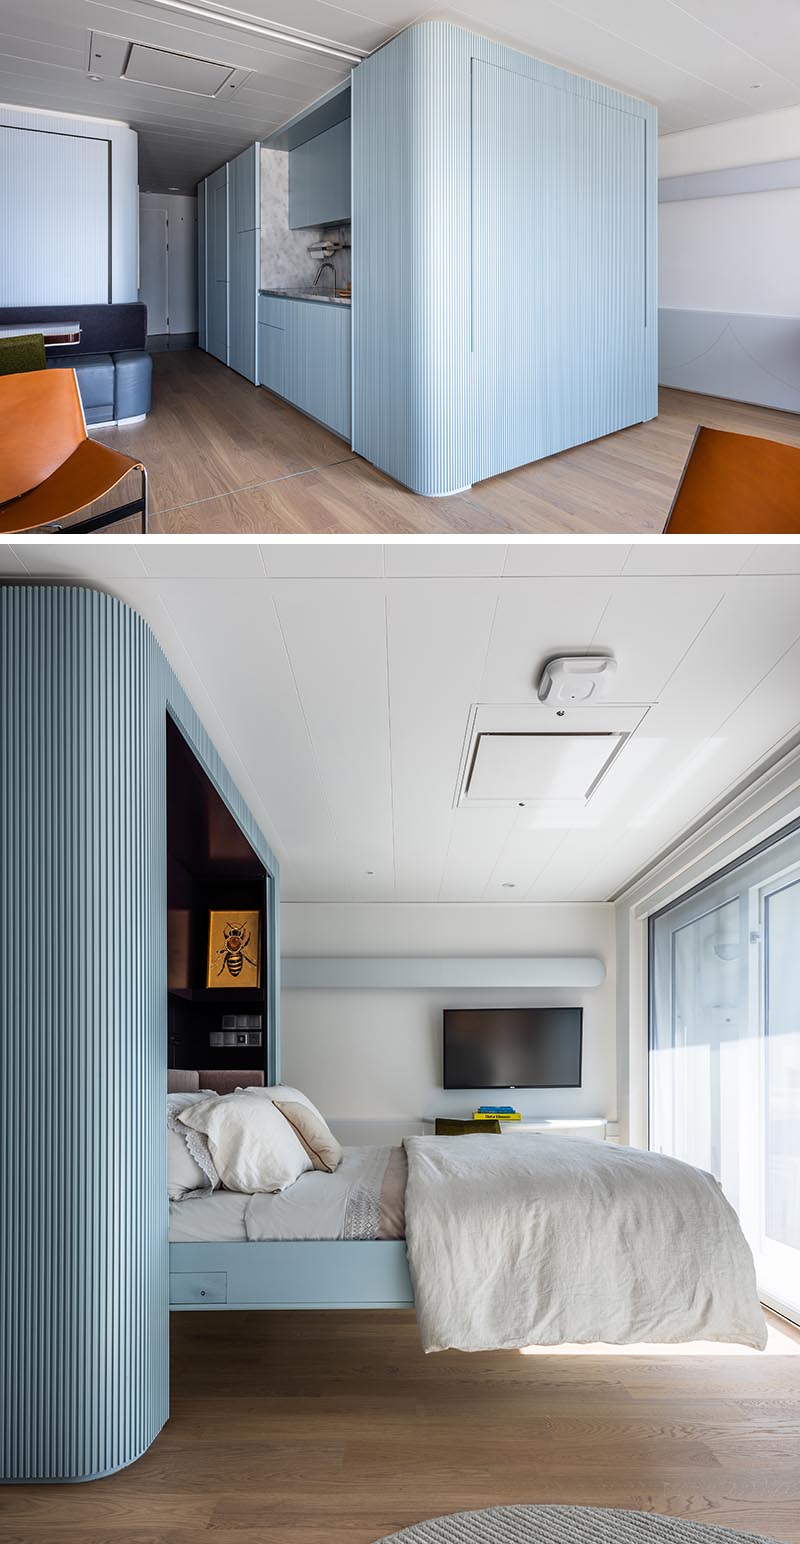 Кровать-мёрфи скрыта за синей текстурированной стеной.